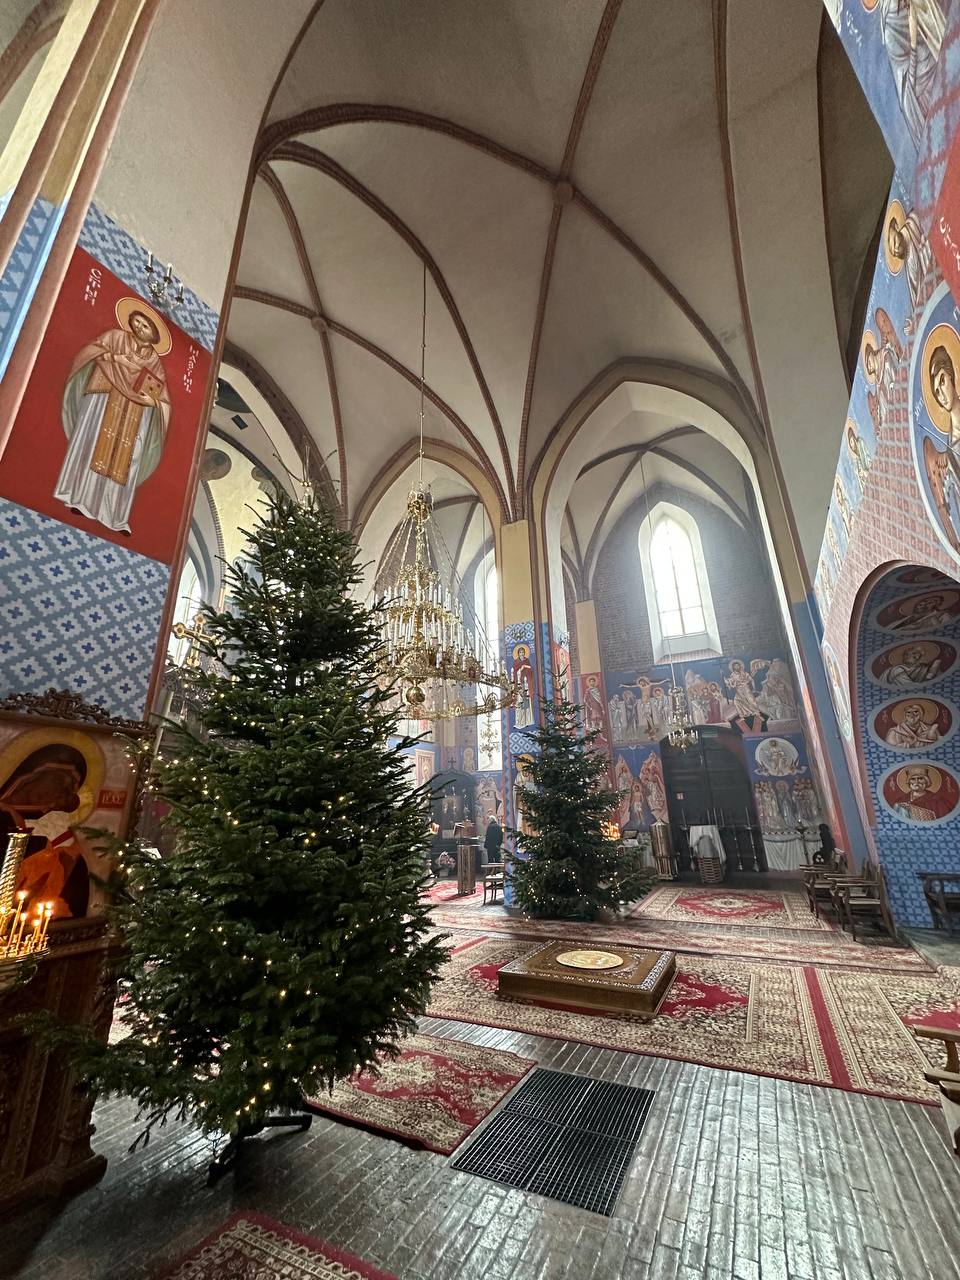 Польская православная церковь во Вроцлаве: эксклюзивный фоторепортаж изнутри - фото 12